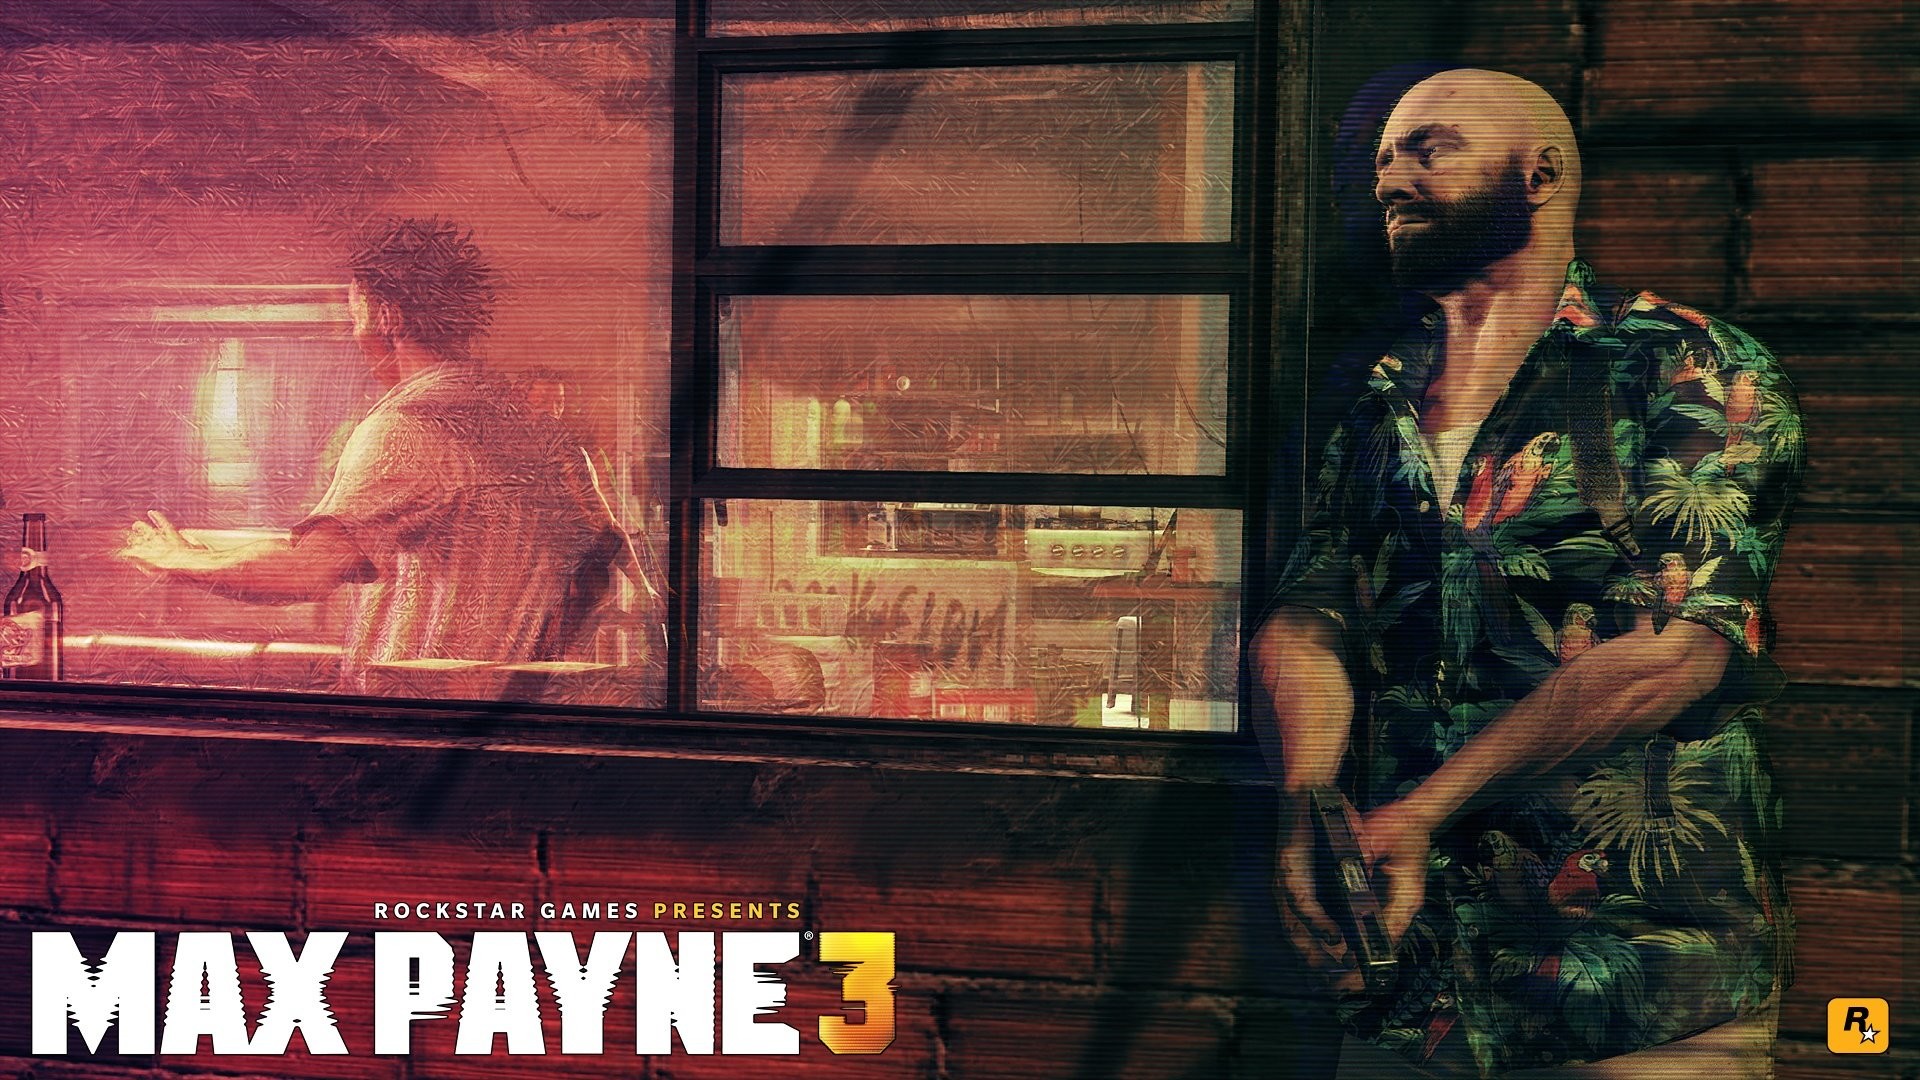 1920x1080 Wallpaper zu Max Payne 3 herunterladen